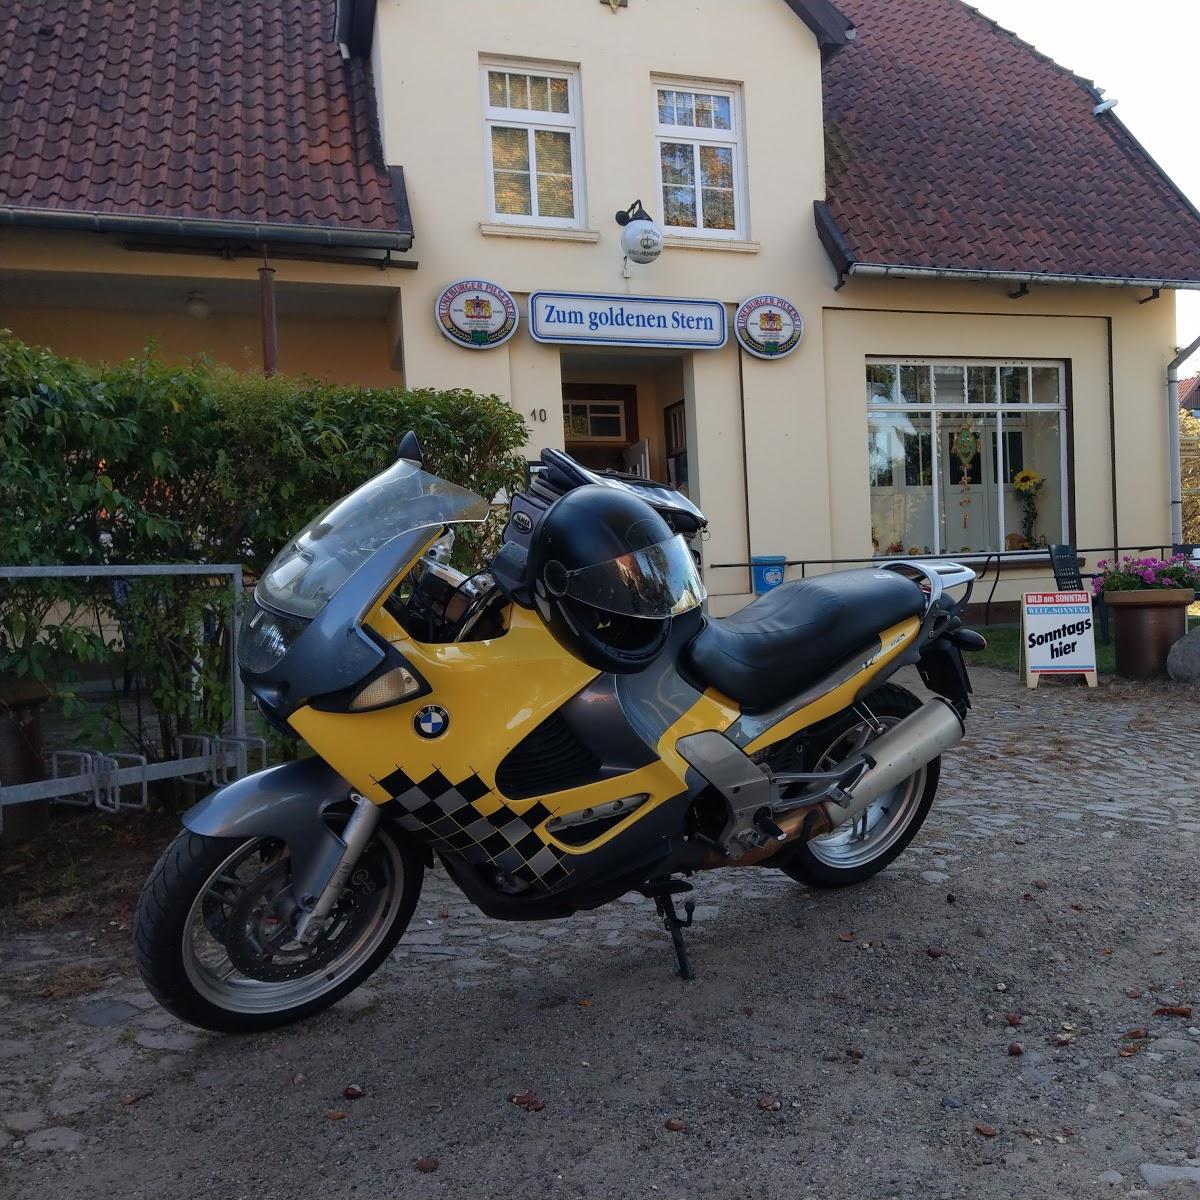 Restaurant "Zum goldenen Stern" in  Neuhaus